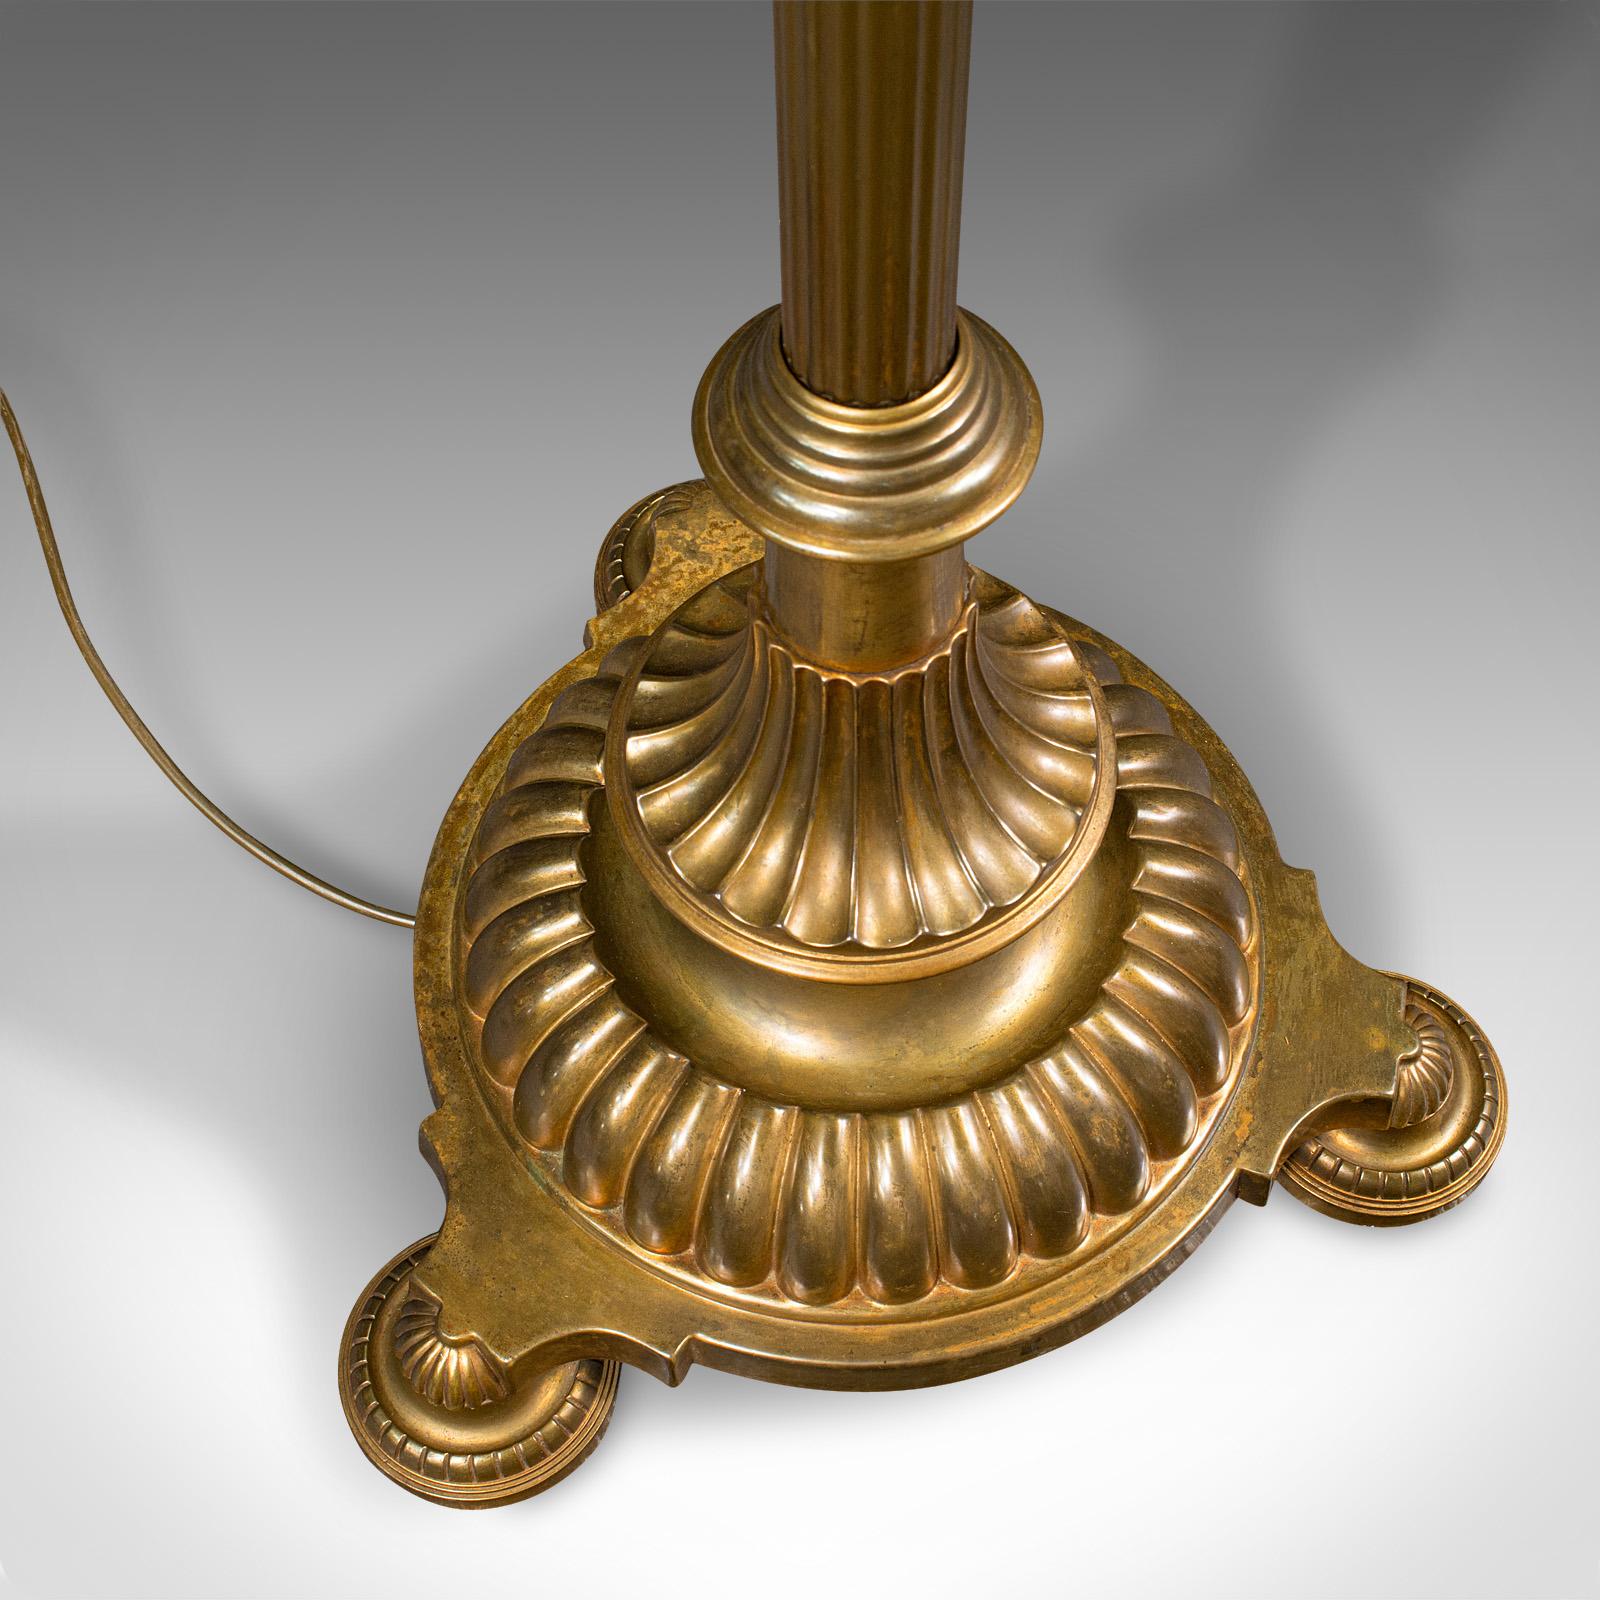 Vintage Standard Lamp, English, Brass, Adjustable Reading Light, 1940 For Sale 3